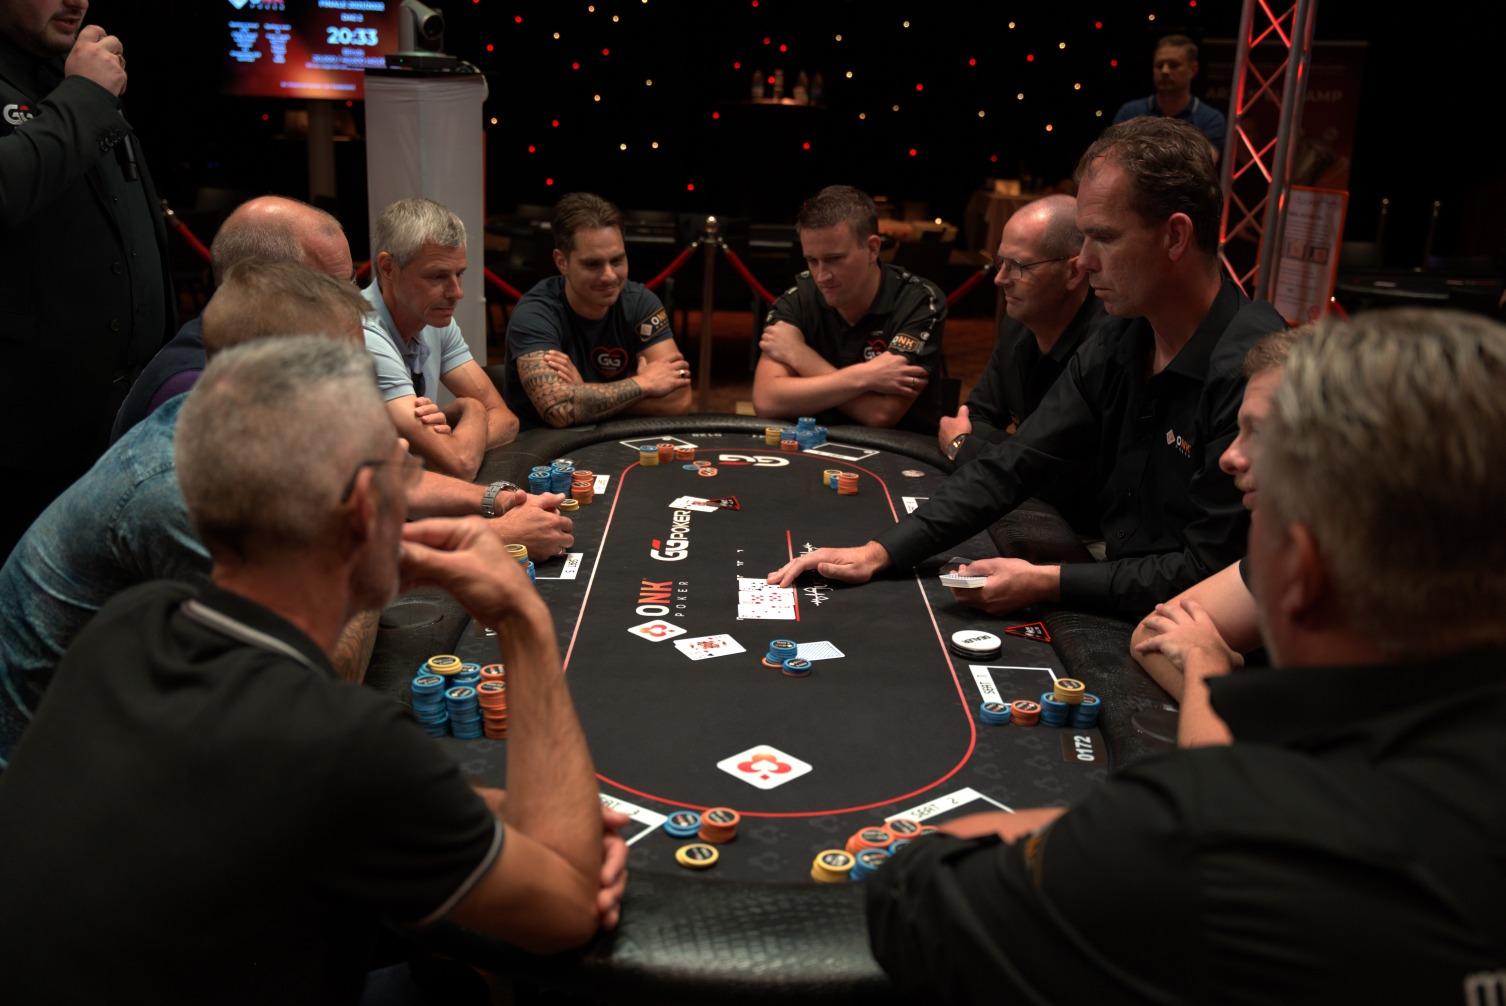 Leer delen als een professionele poker dealer!